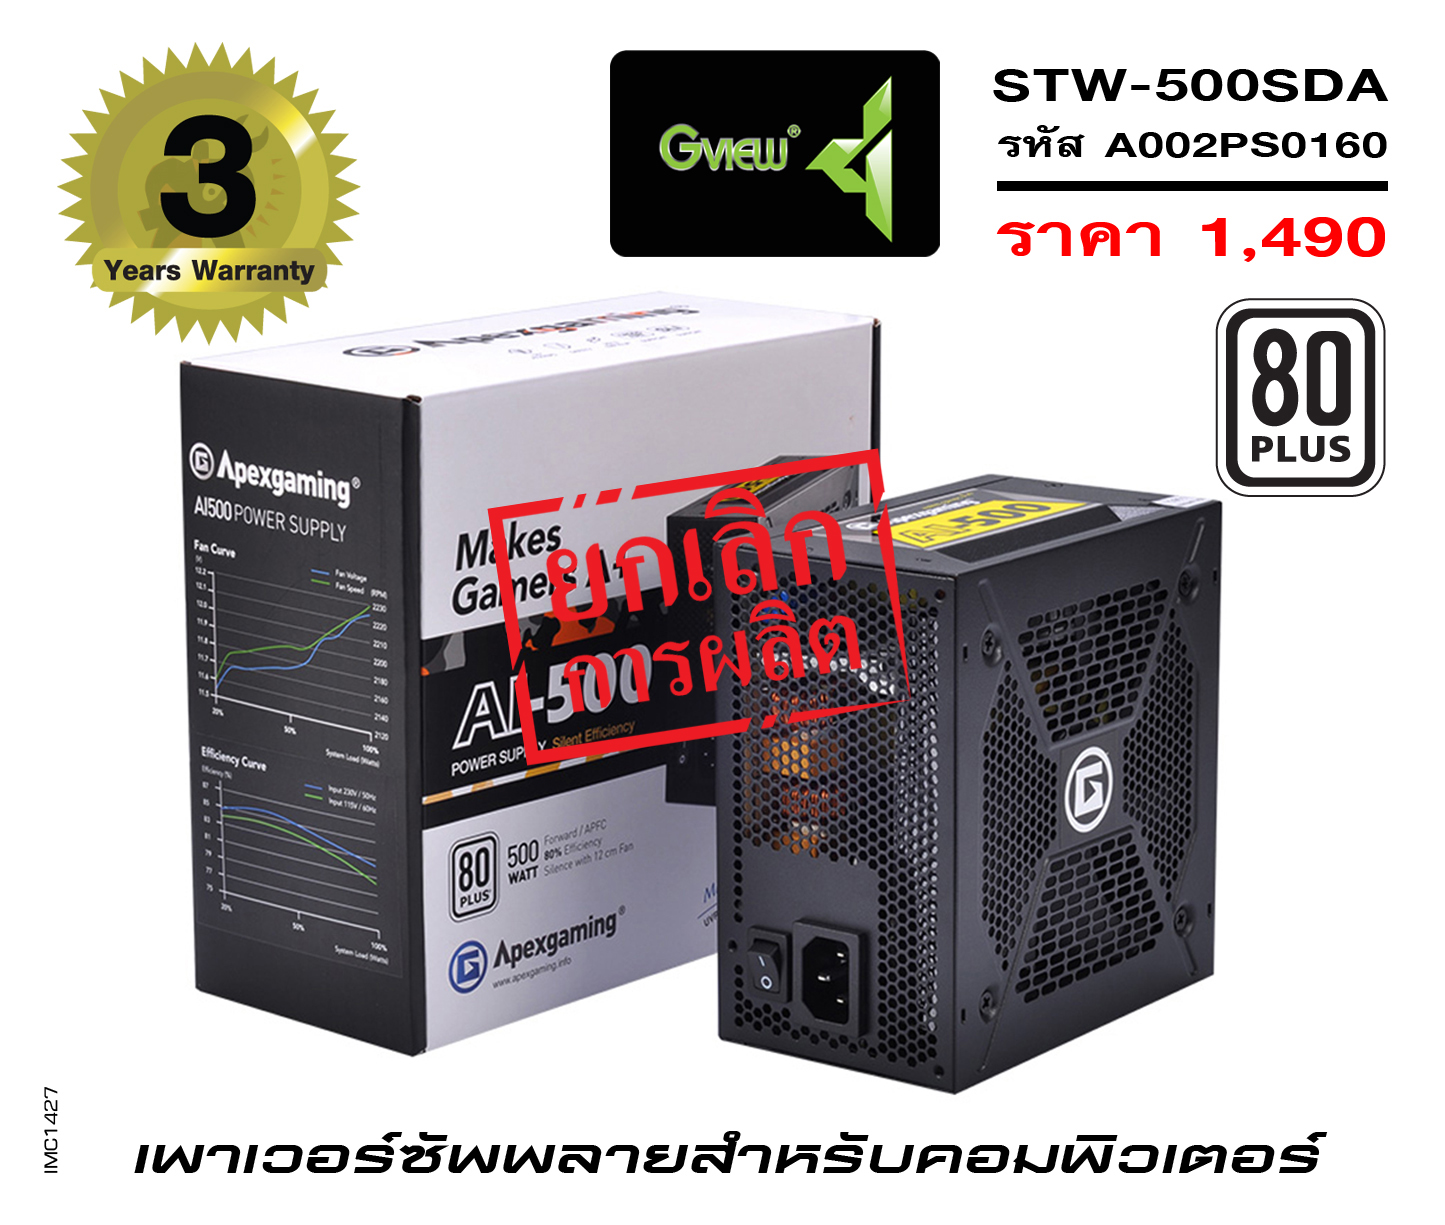 รุ่น STW-500SDA (รหัส A002PS0160)